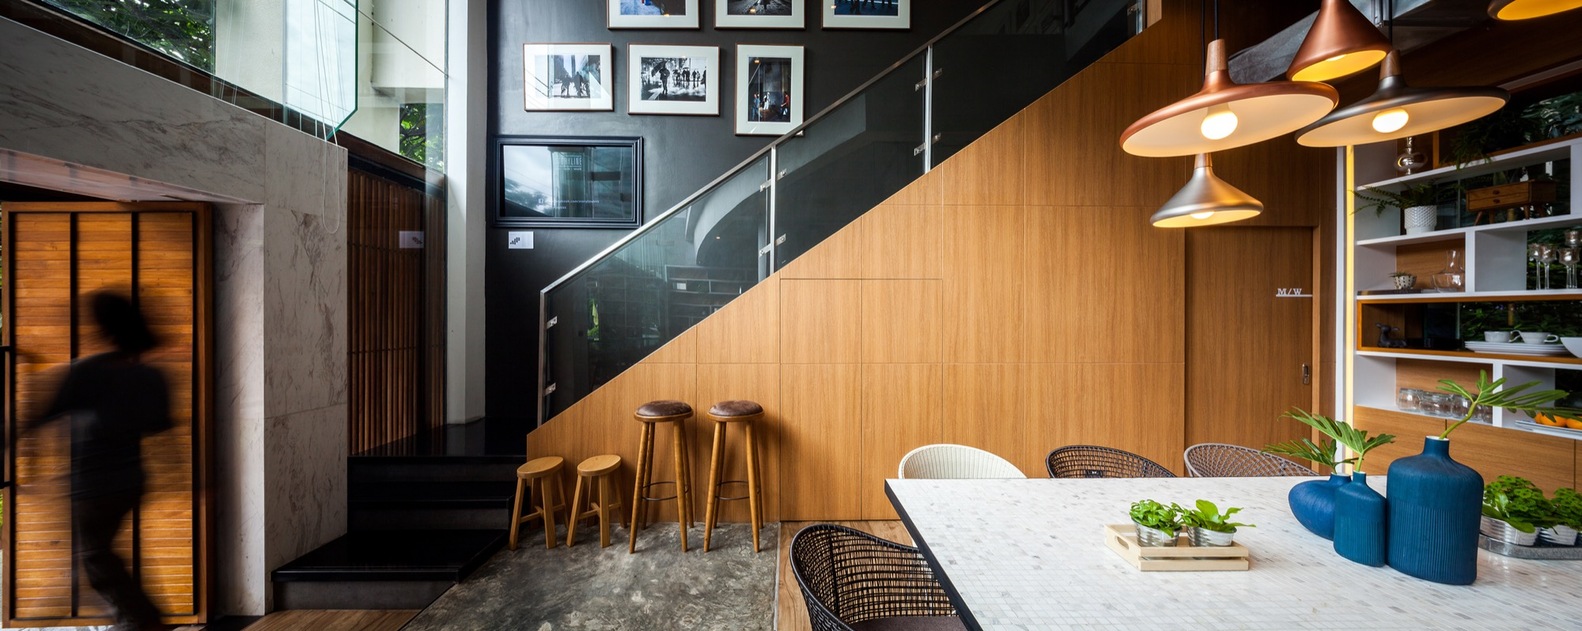 Деревянная отделка лестницы в интерьере кафе-бара